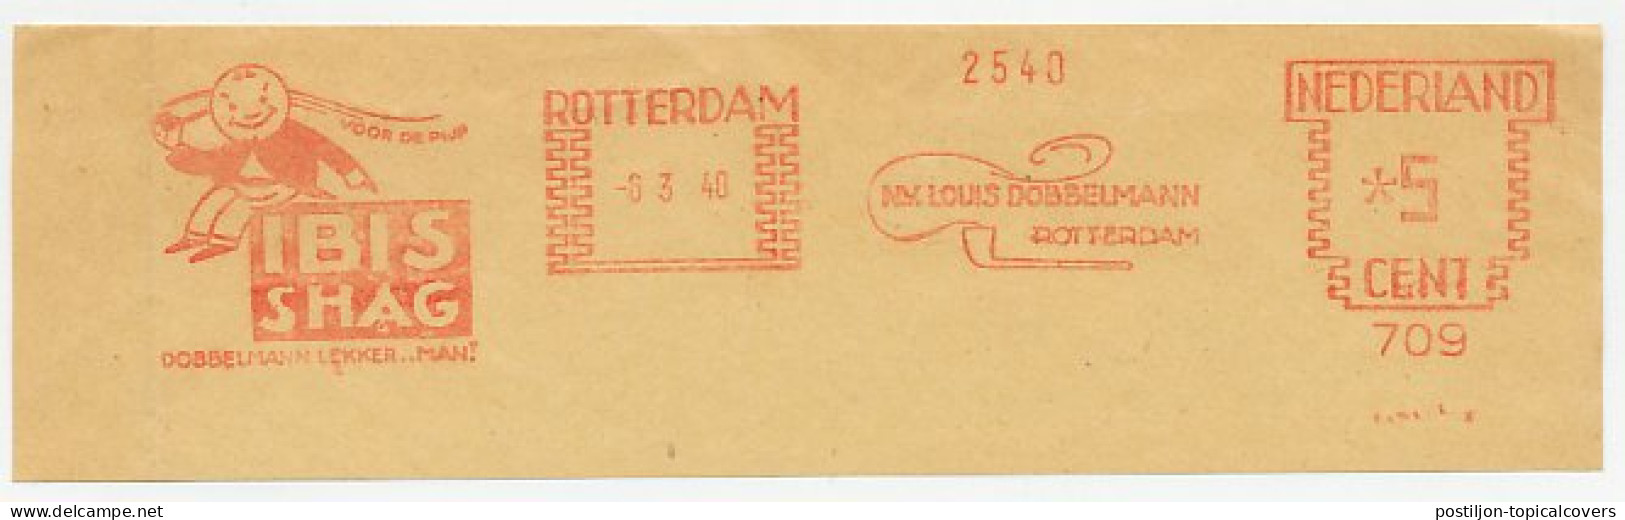 Meter Cut Netherlands 1940 Ibis Shag - Tobacco - Pipe Smoking - Tabak